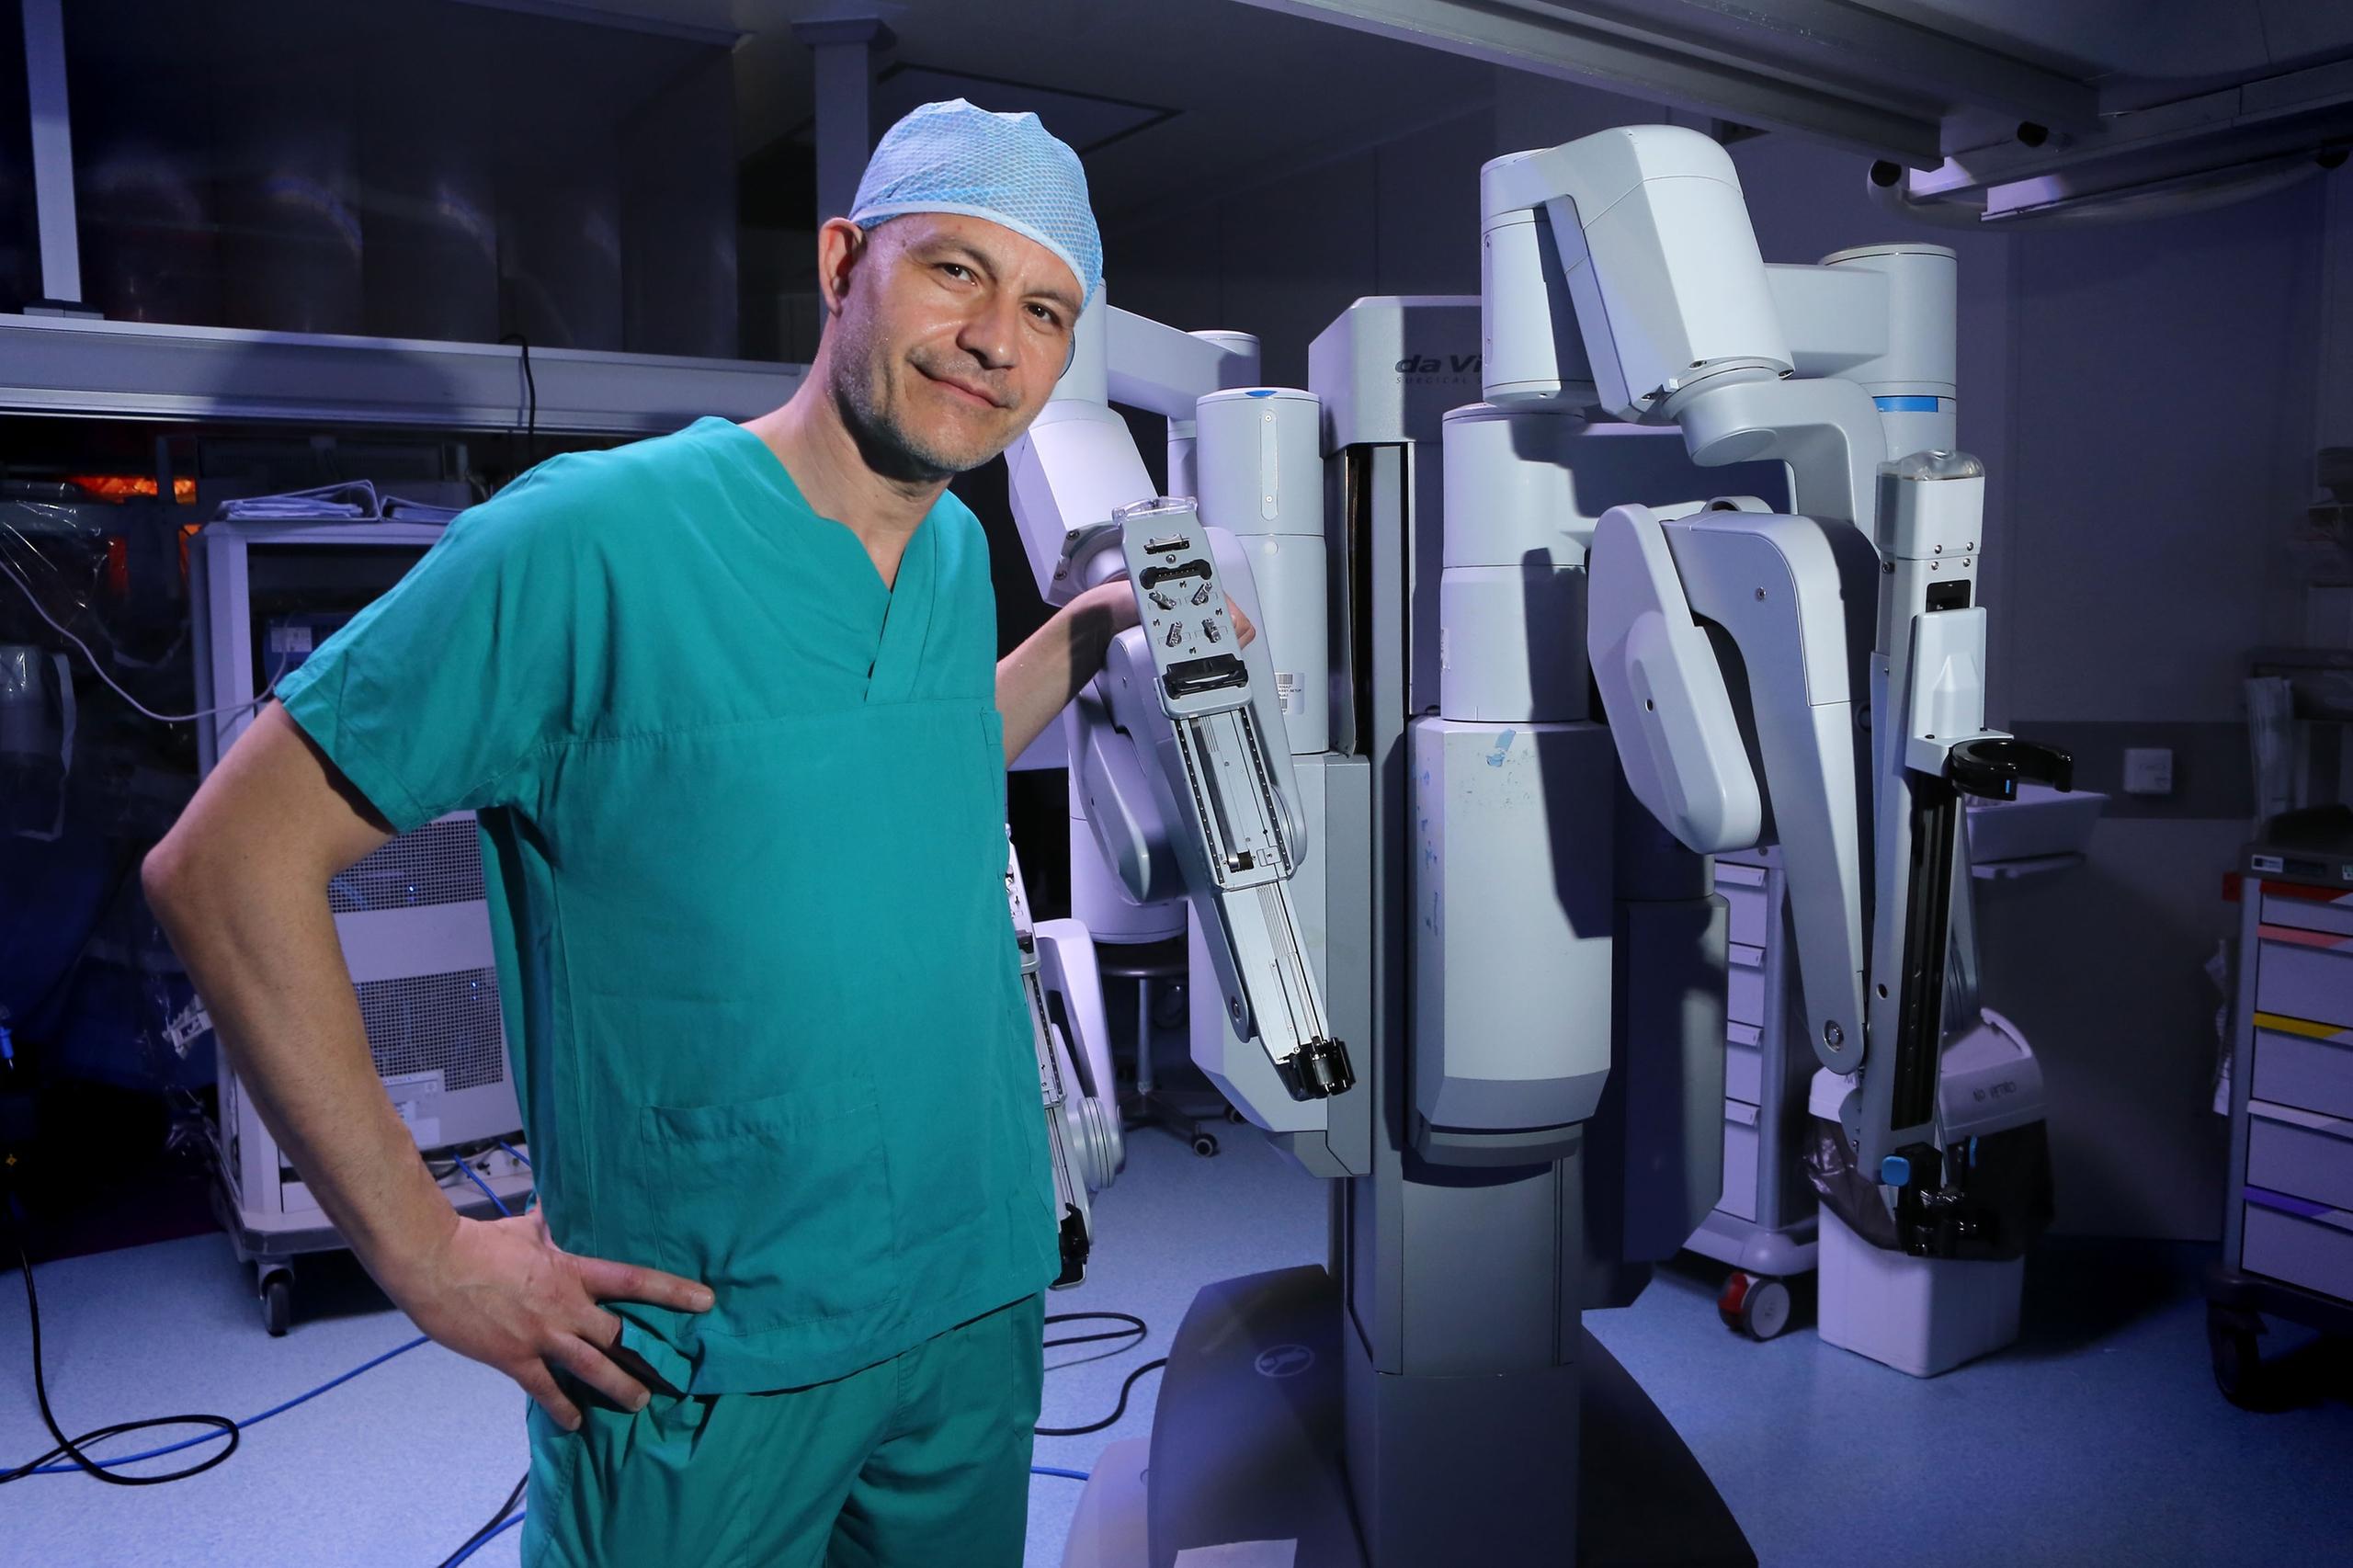 Urologia, novos robôs mudarão a saúde: conferência Maxi em Florença